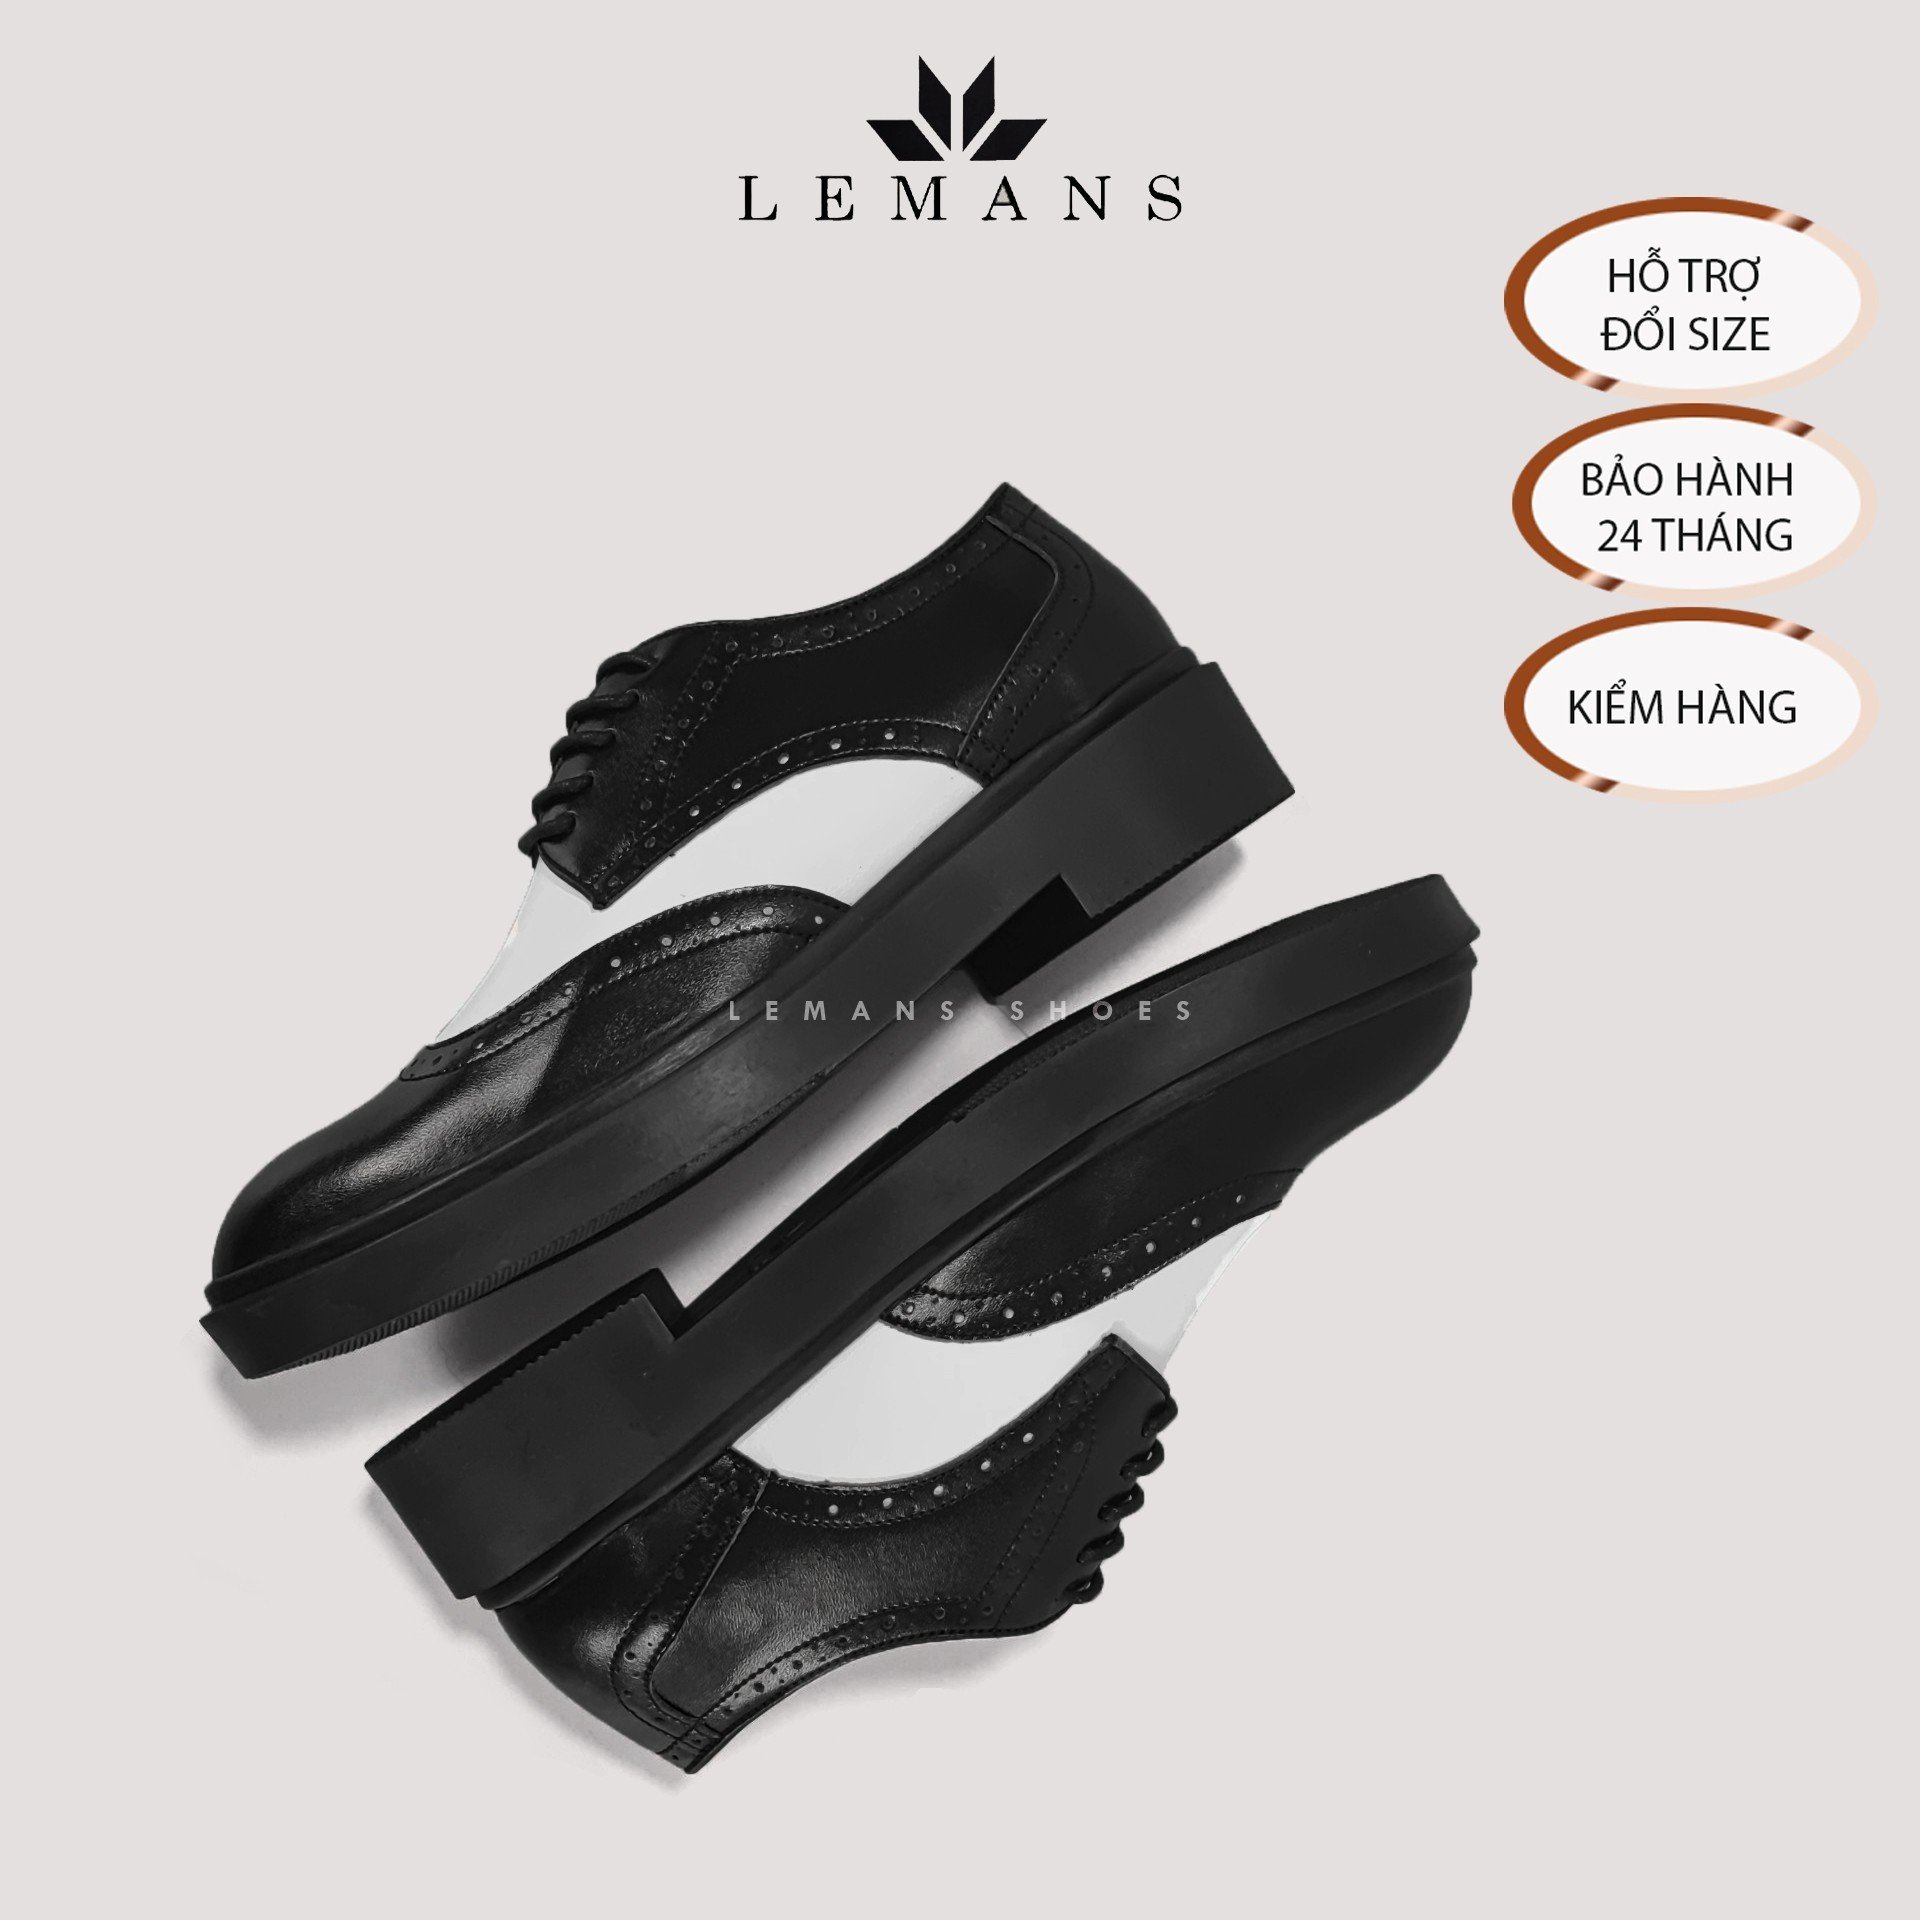 Giày da bò Derby Wingtip LEMANS Black White, đế tăng cao lemans 4cm Bảo Hành 24 Tháng, thiết kế độc quyền